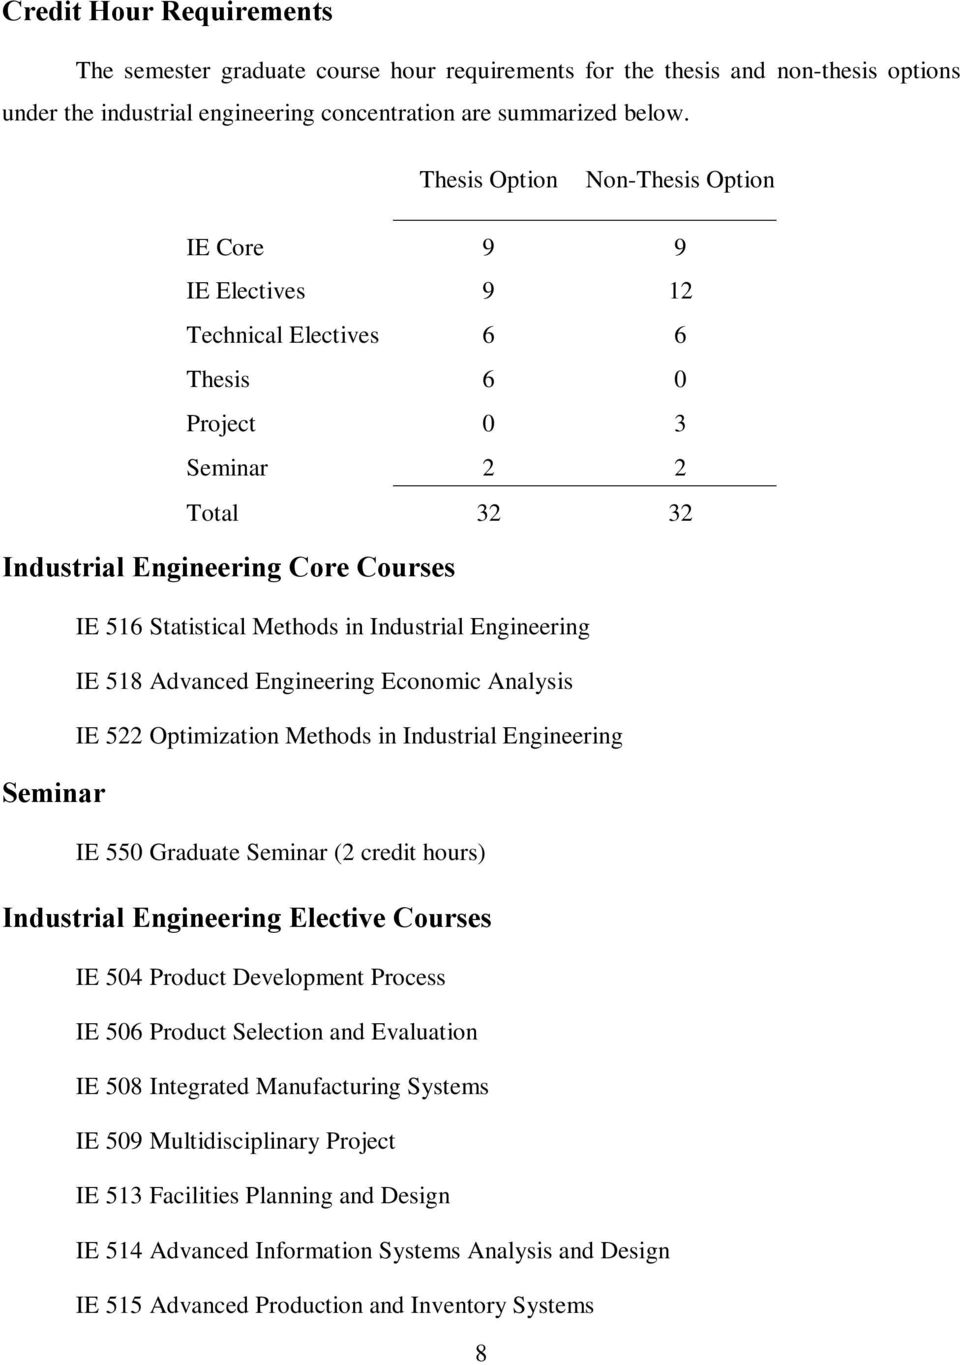 Industrial Engineering IE 518 Advanced Engineering Economic Analysis IE 522 Optimization Methods in Industrial Engineering Seminar IE 550 Graduate Seminar (2 credit hours) Industrial Engineering